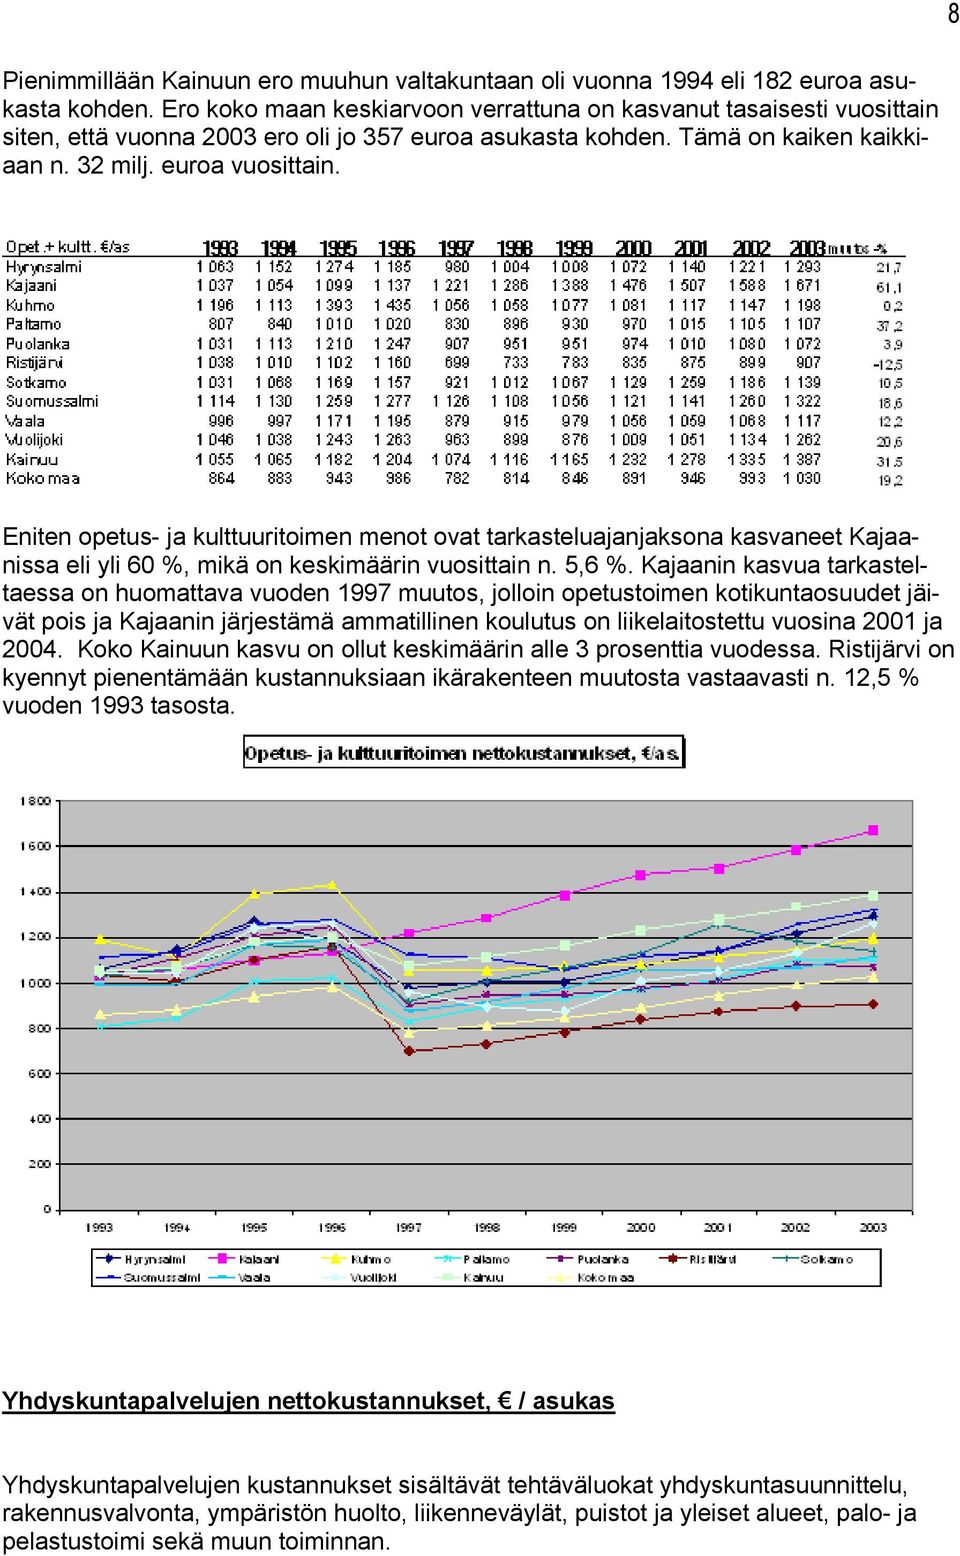 8 Eniten opetus- ja kulttuuritoimen menot ovat tarkasteluajanjaksona kasvaneet Kajaanissa eli yli 60 %, mikä on keskimäärin vuosittain n. 5,6 %.